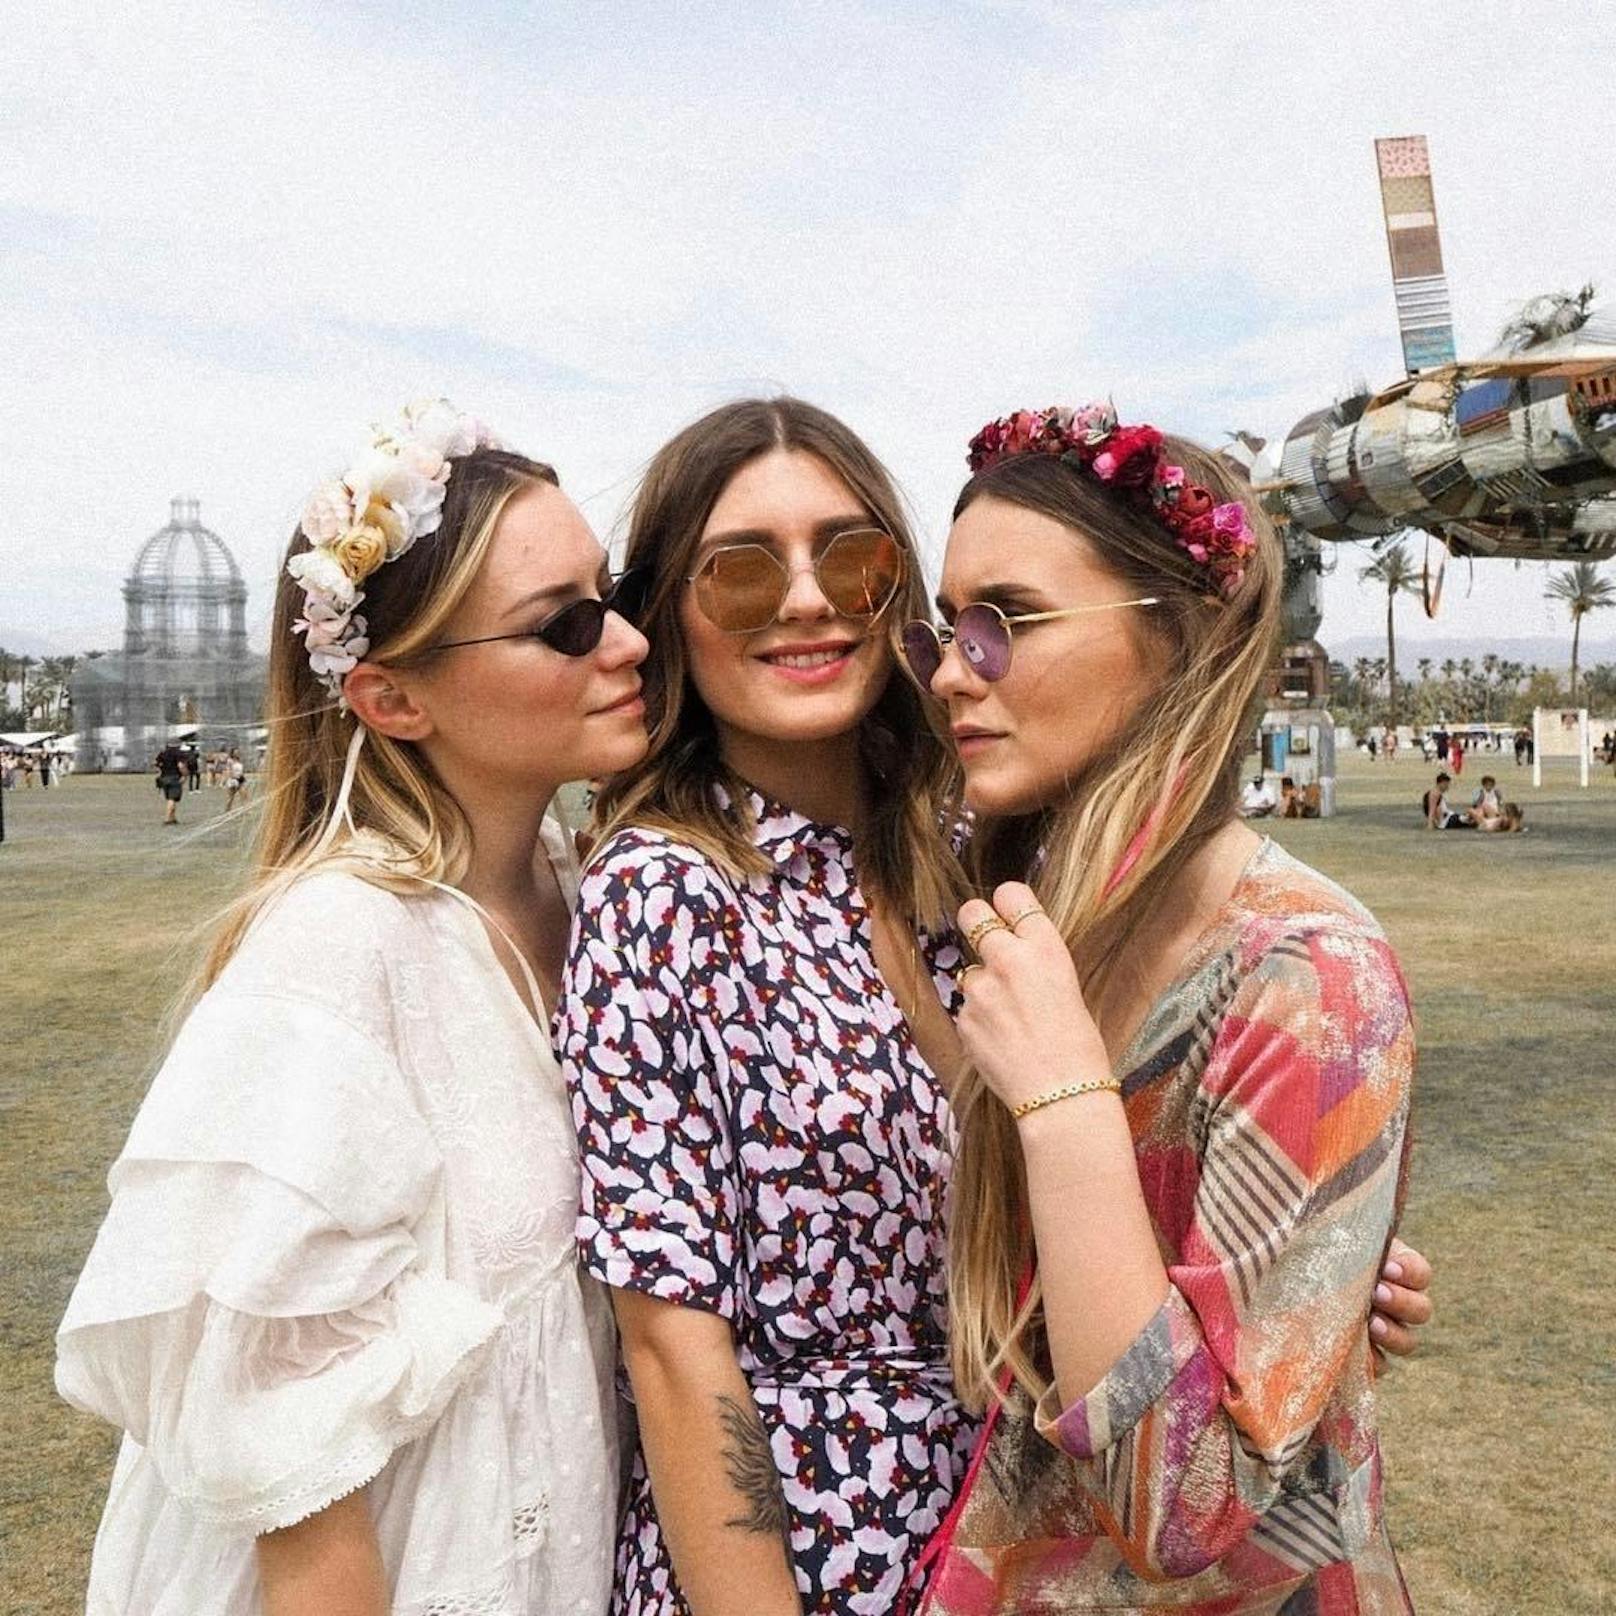 Sogar beim Coachella Festival 2018 waren die floralen Kronen der Blumenmädchen vertreten.